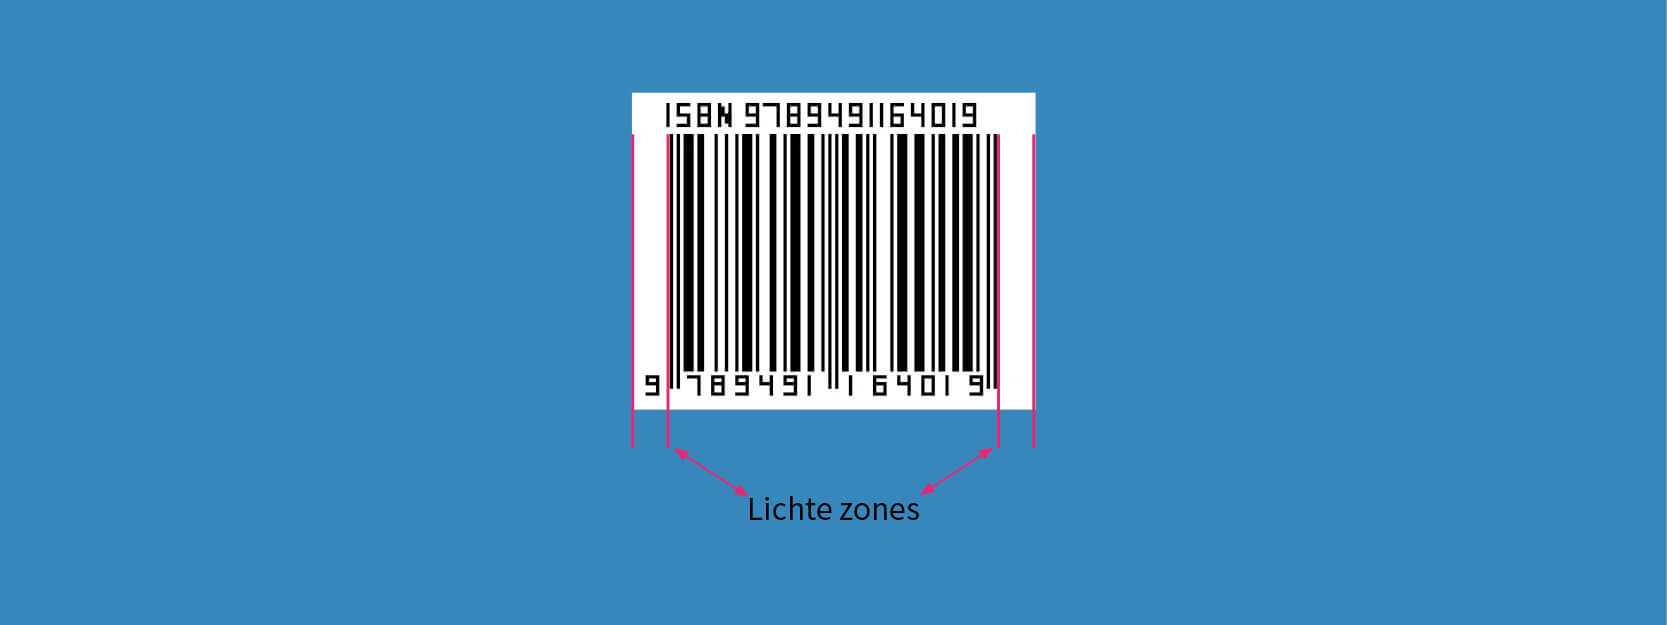 Barcode lichte zones